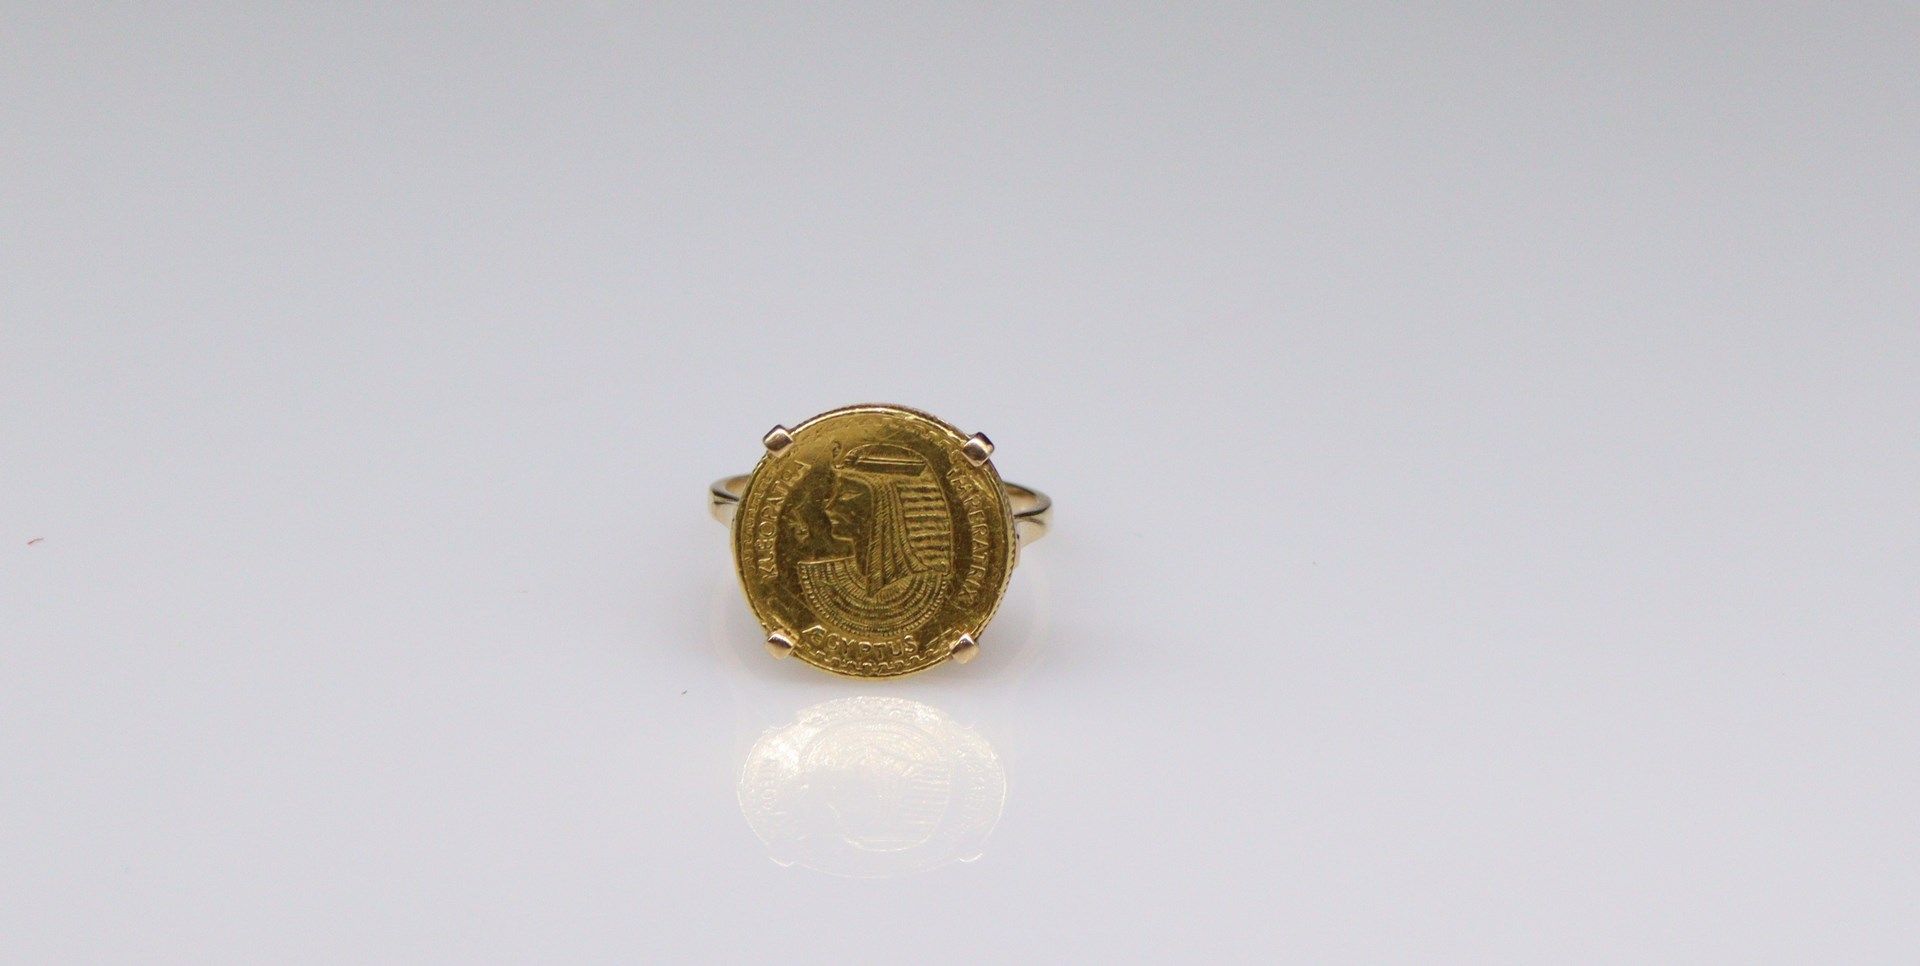 Null Ring aus 18k (750) Gelbgold mit einer ägyptischen Münze.
Gewicht: 4,75 g.